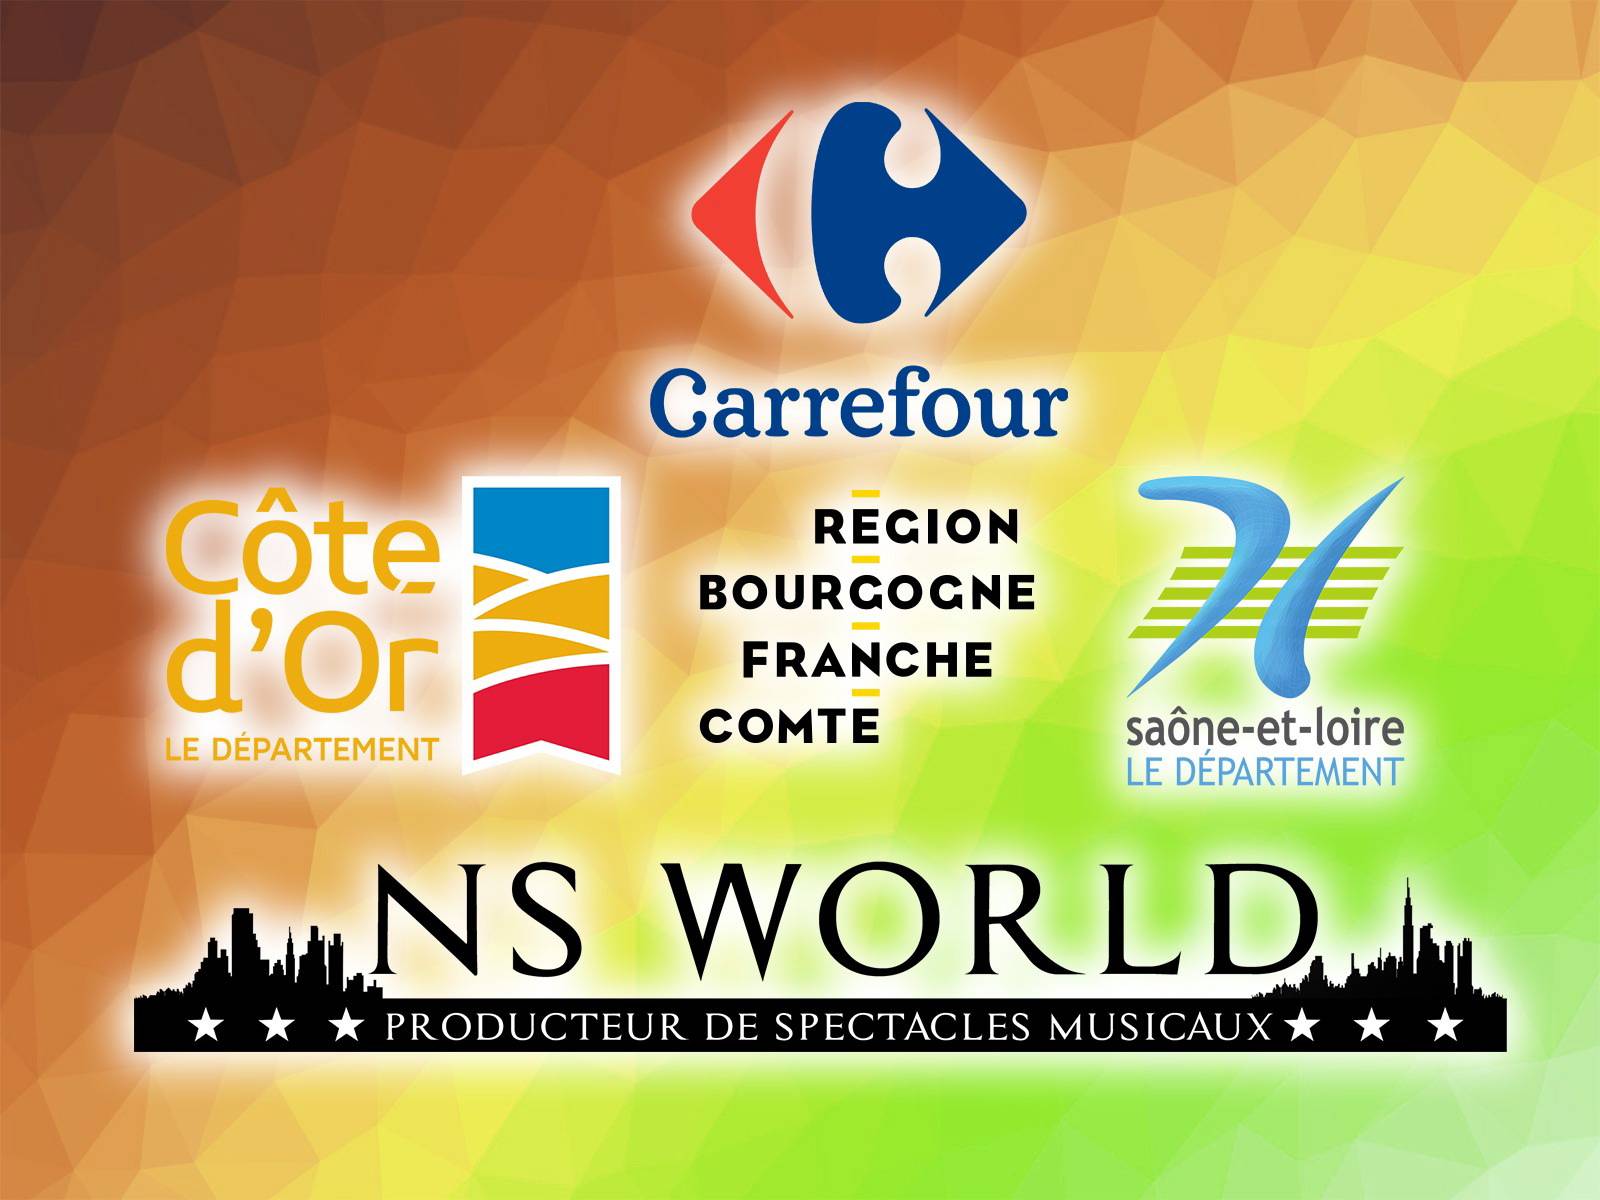 NS World présent dans l'Est de la France avec des spectacles musicaux pour les magasins Carrefour